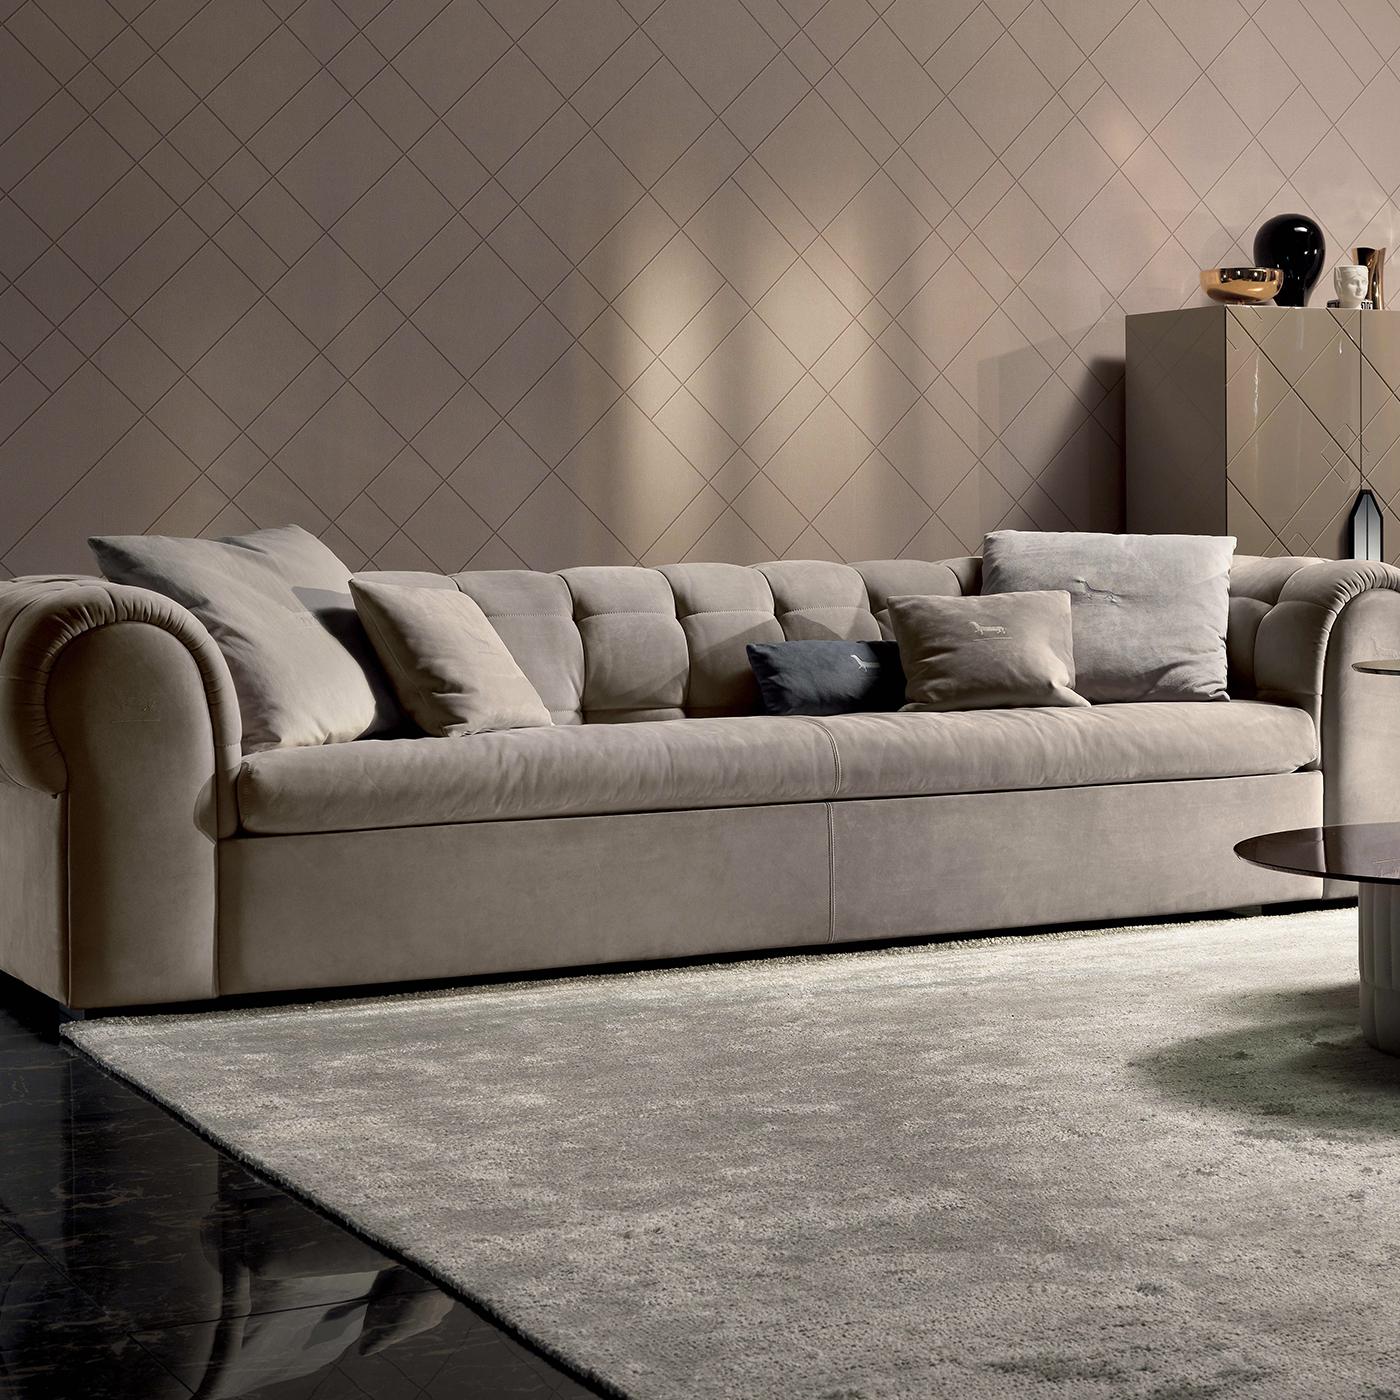 Mit seiner vom Chesterfield-Stil inspirierten Silhouette passt dieses Sofa in jedes traditionelle, moderne, Boho oder zeitgenössische Wohnzimmer. Der einladende Sessel Silhouette ist vollständig aus Massivholz gefertigt, hat eine niedrige Sitzhöhe